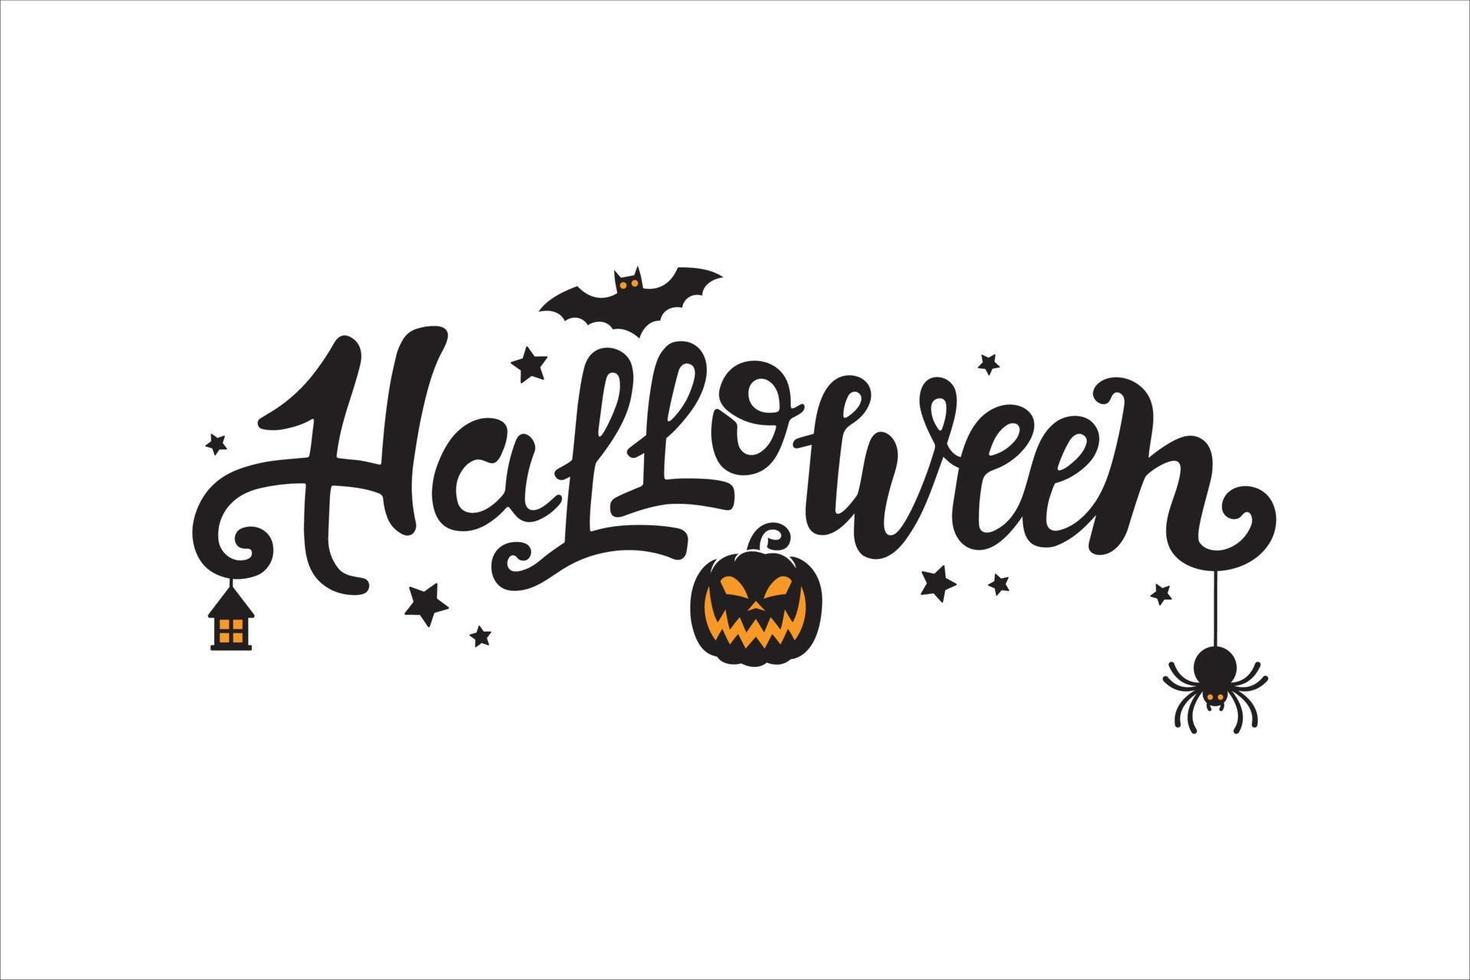 halloween vektor handskriven text design. festlig kalligrafi med Spindel, fladdermus, pumpa, stjärnor, lykta för baner, affisch, hälsning kort, fest inbjudan. isolerat illustration.